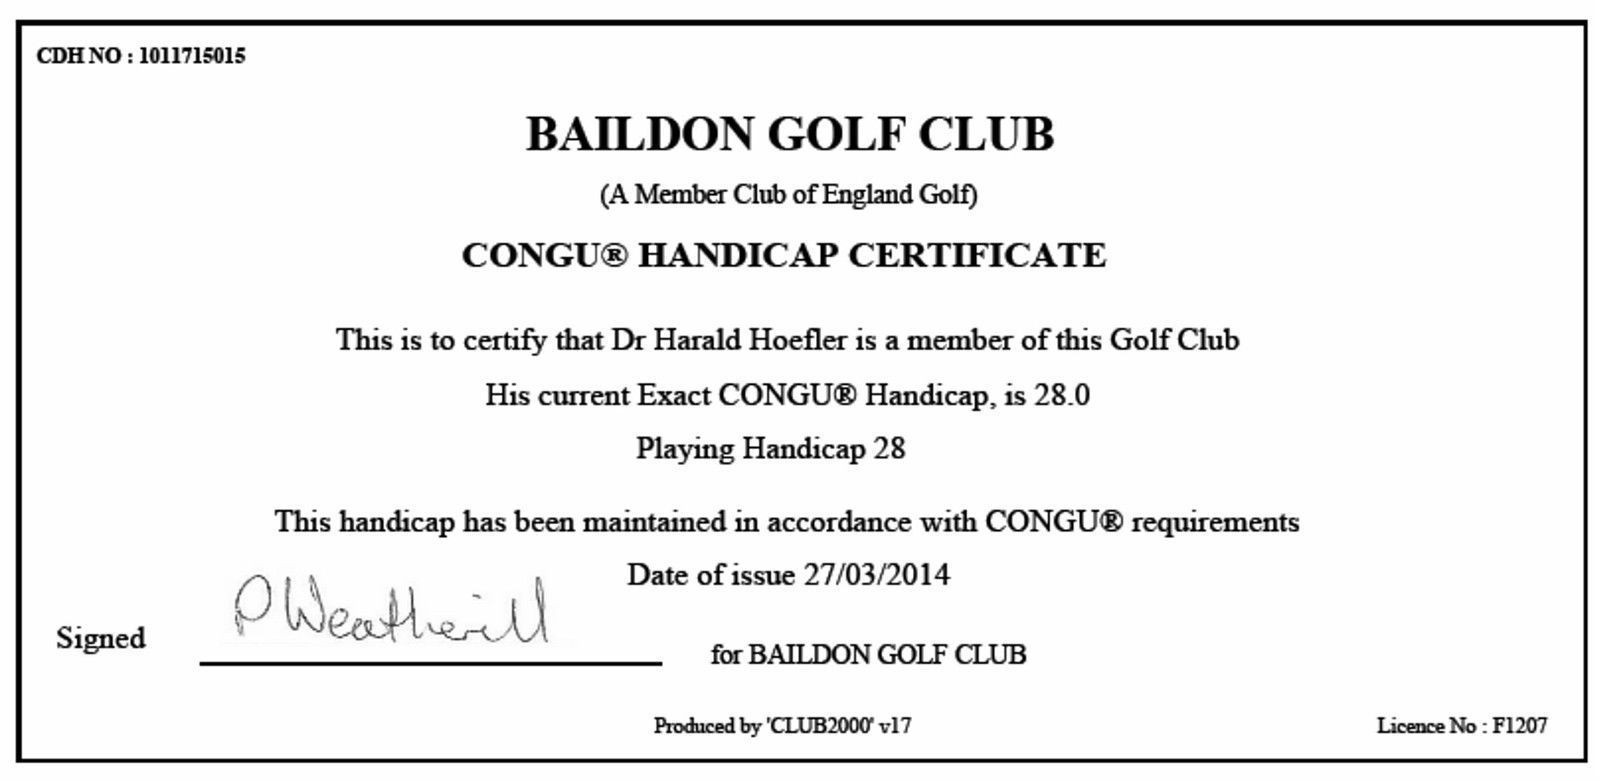 Als Fernmitglied Im Baildon Golf Club Erhalten Sie Von Uns Ein CONGU Handicap